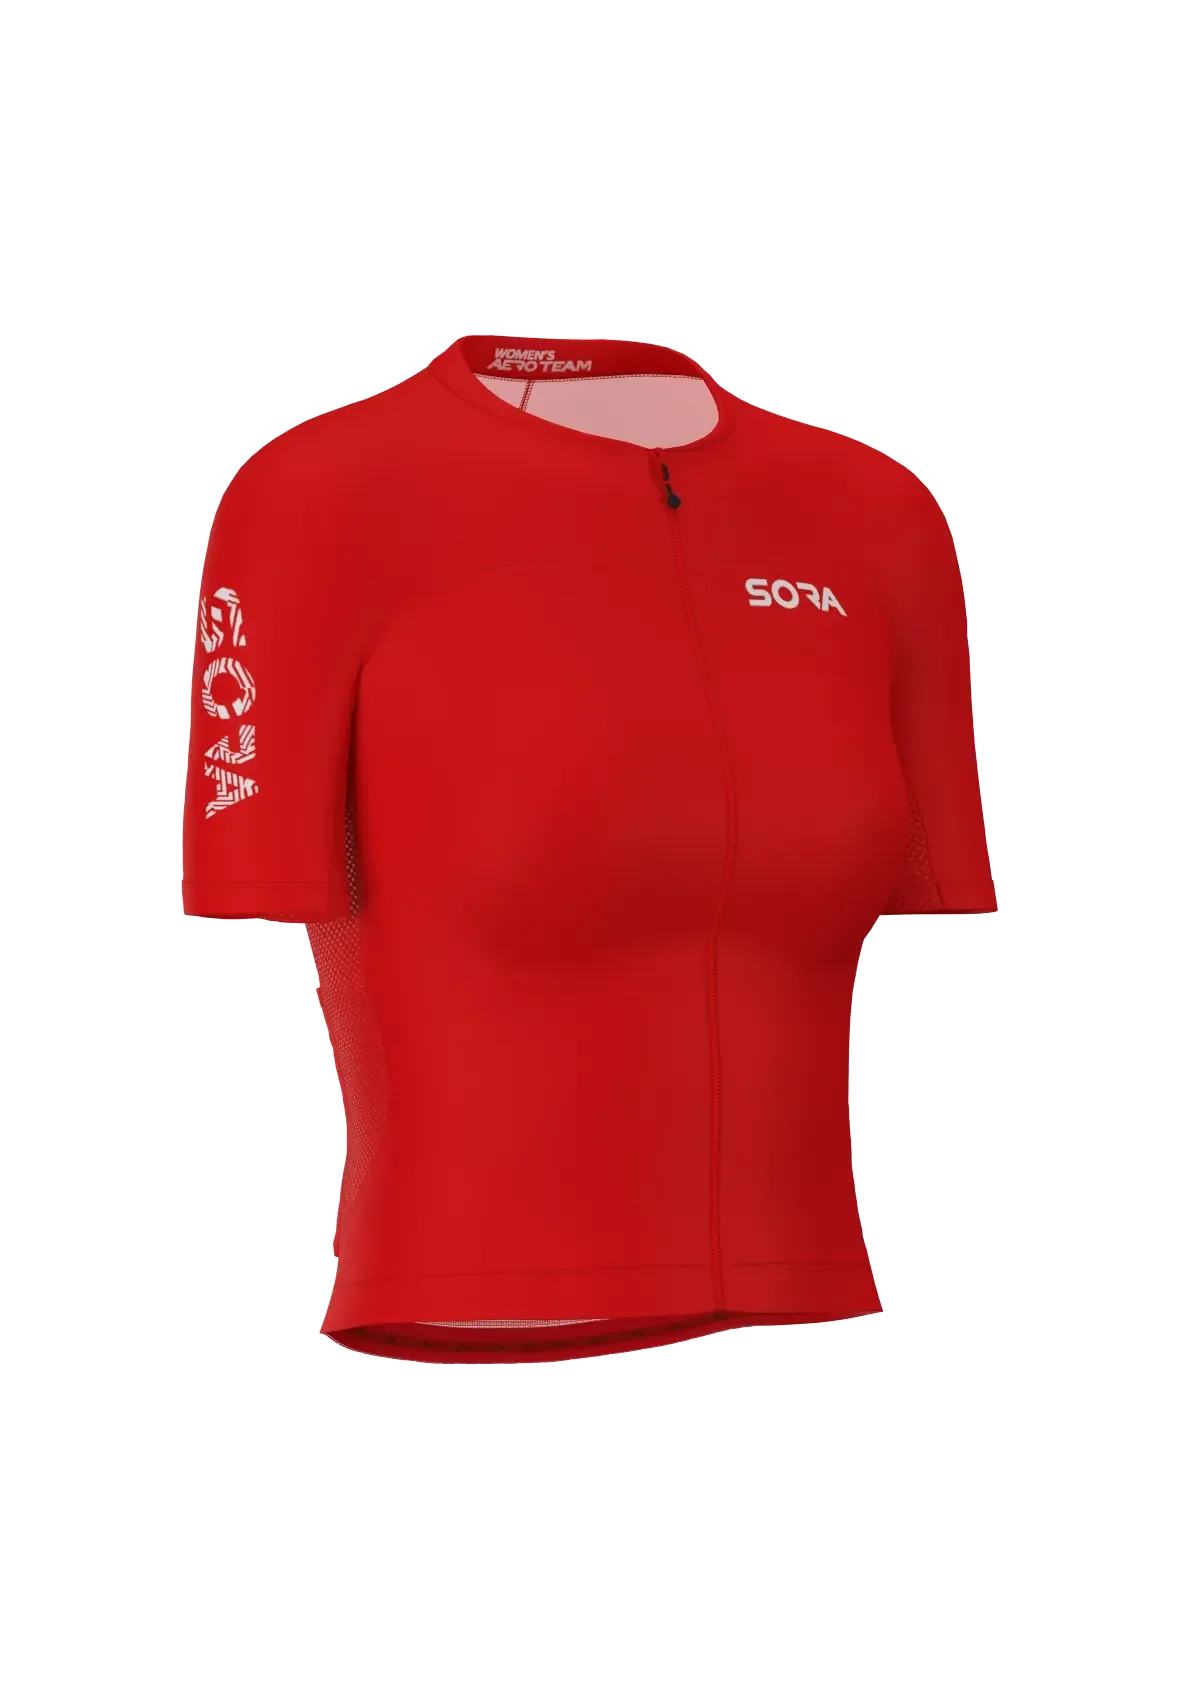 Aero Team Damen Fahrrad Trikot Rot